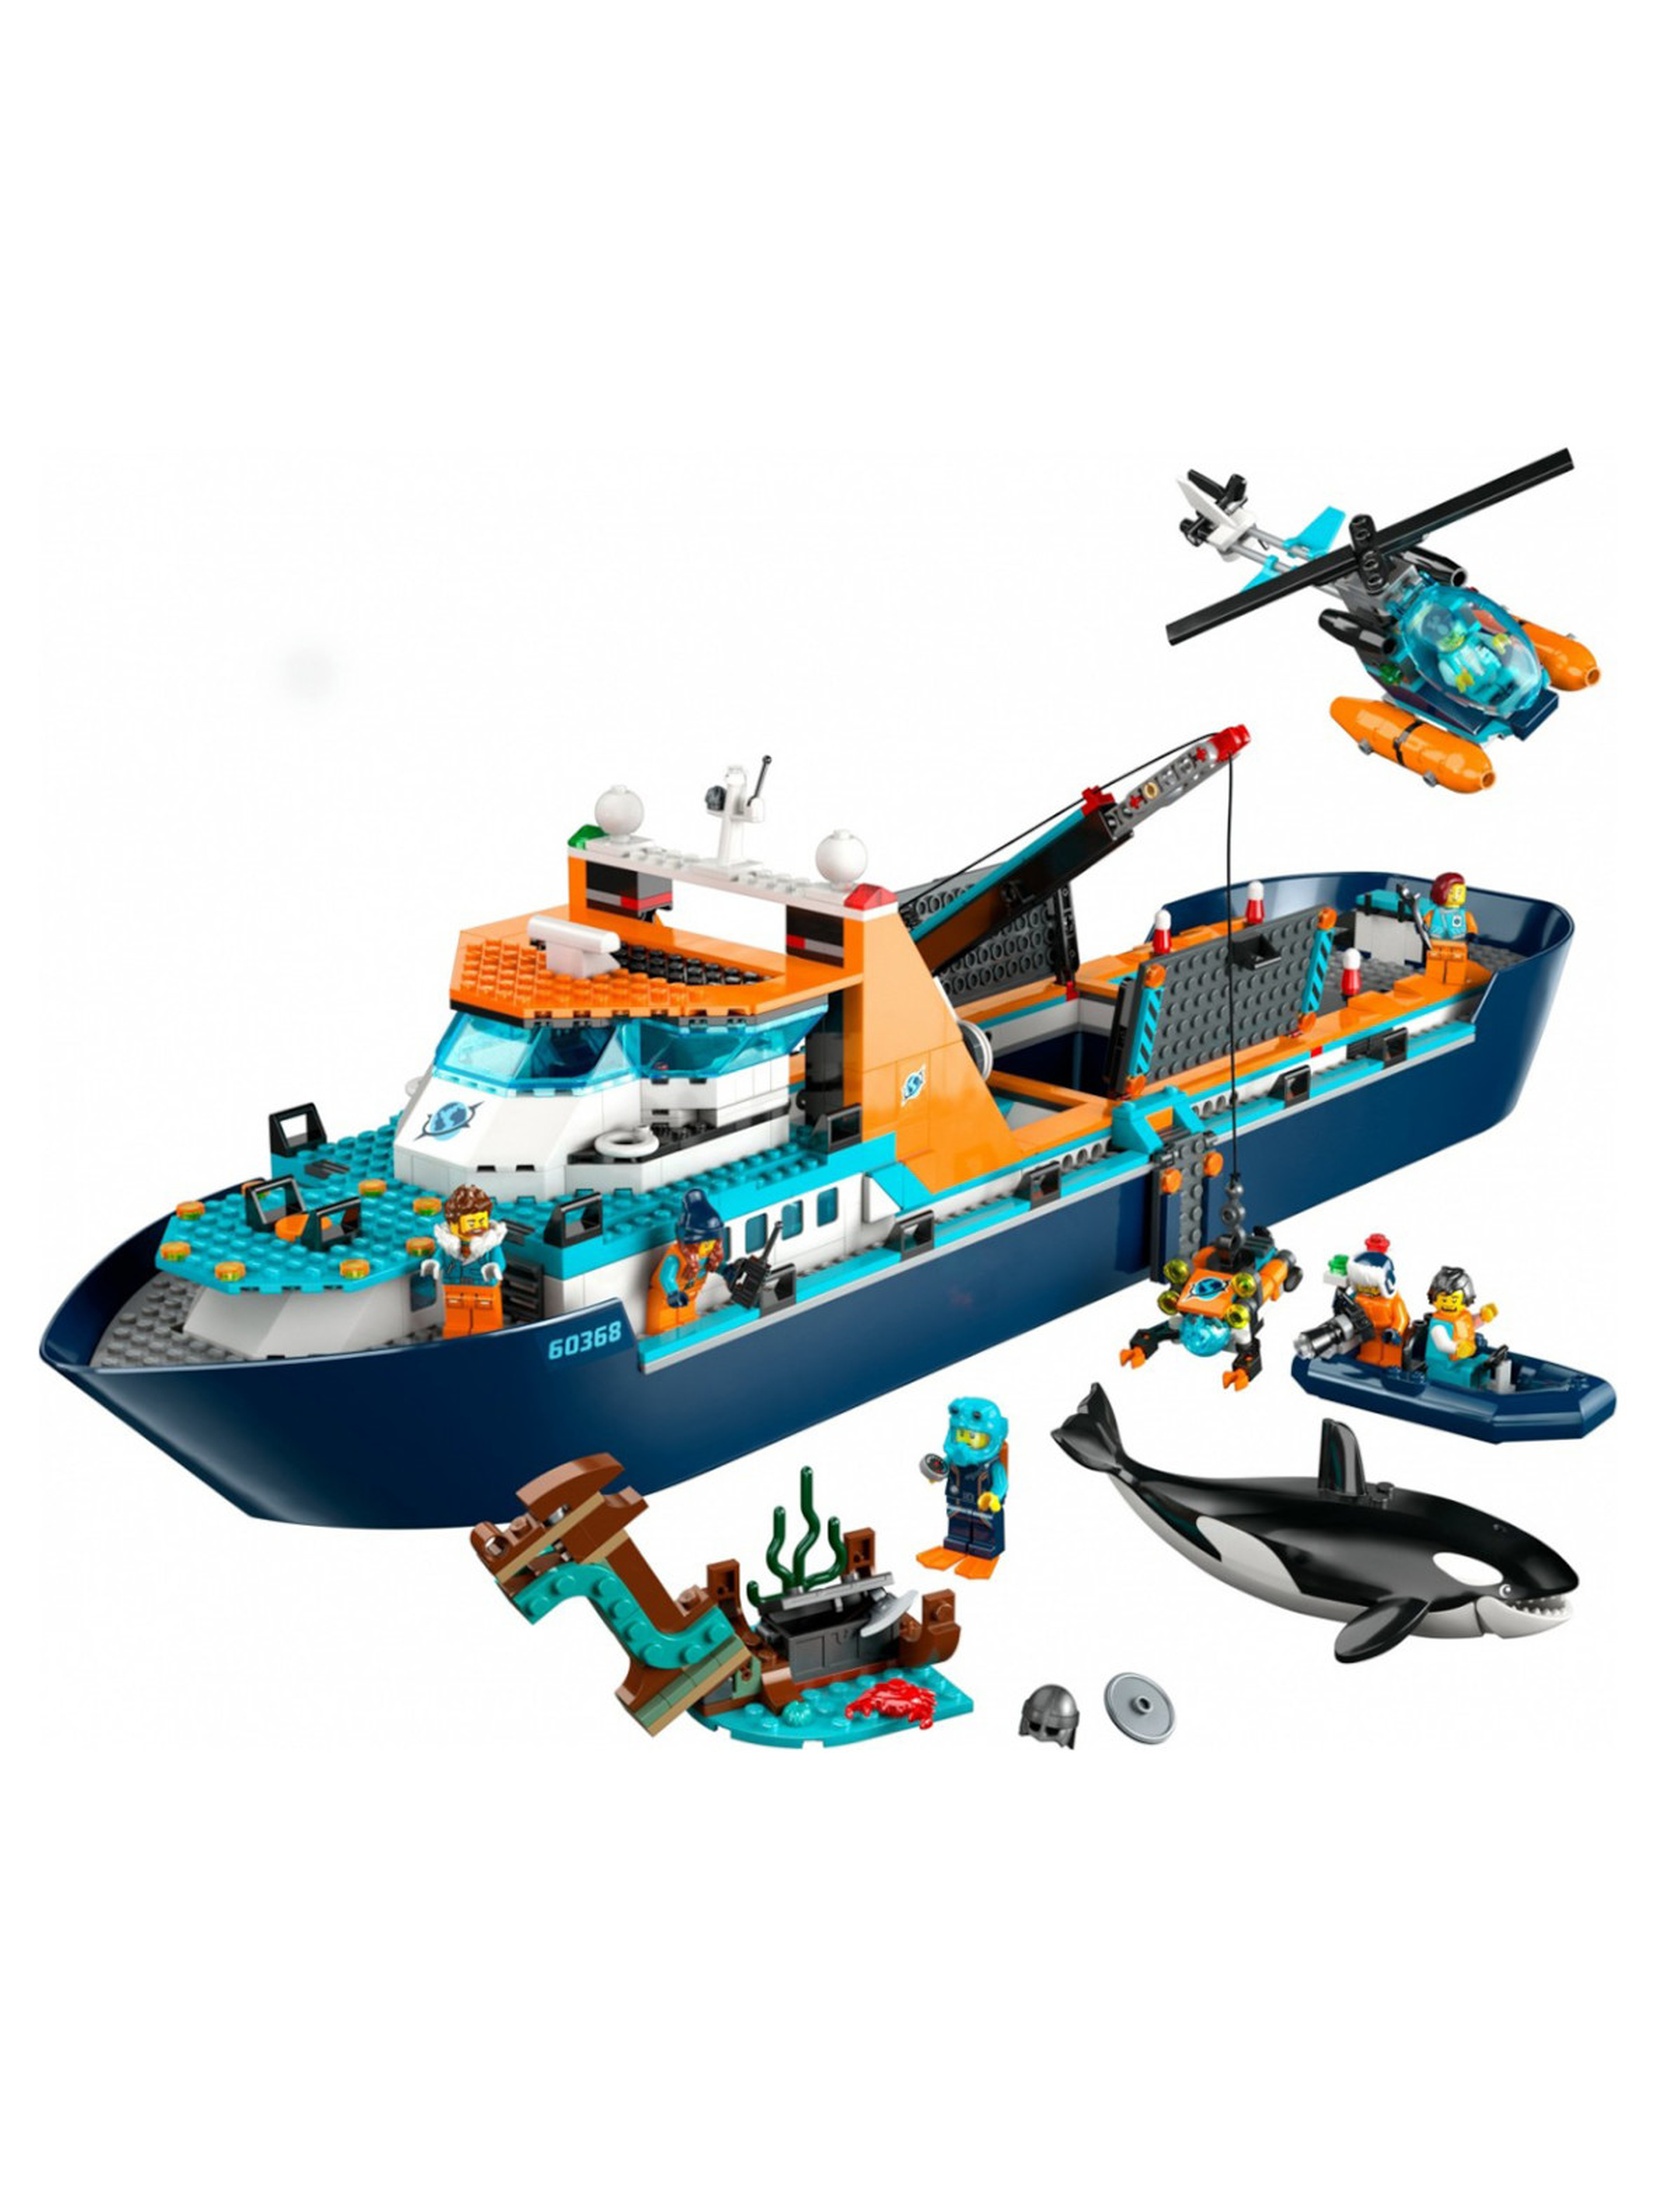 Klocki LEGO City 60368 Łódź badacza Arktyki - 815 elementów, wiek 7 +